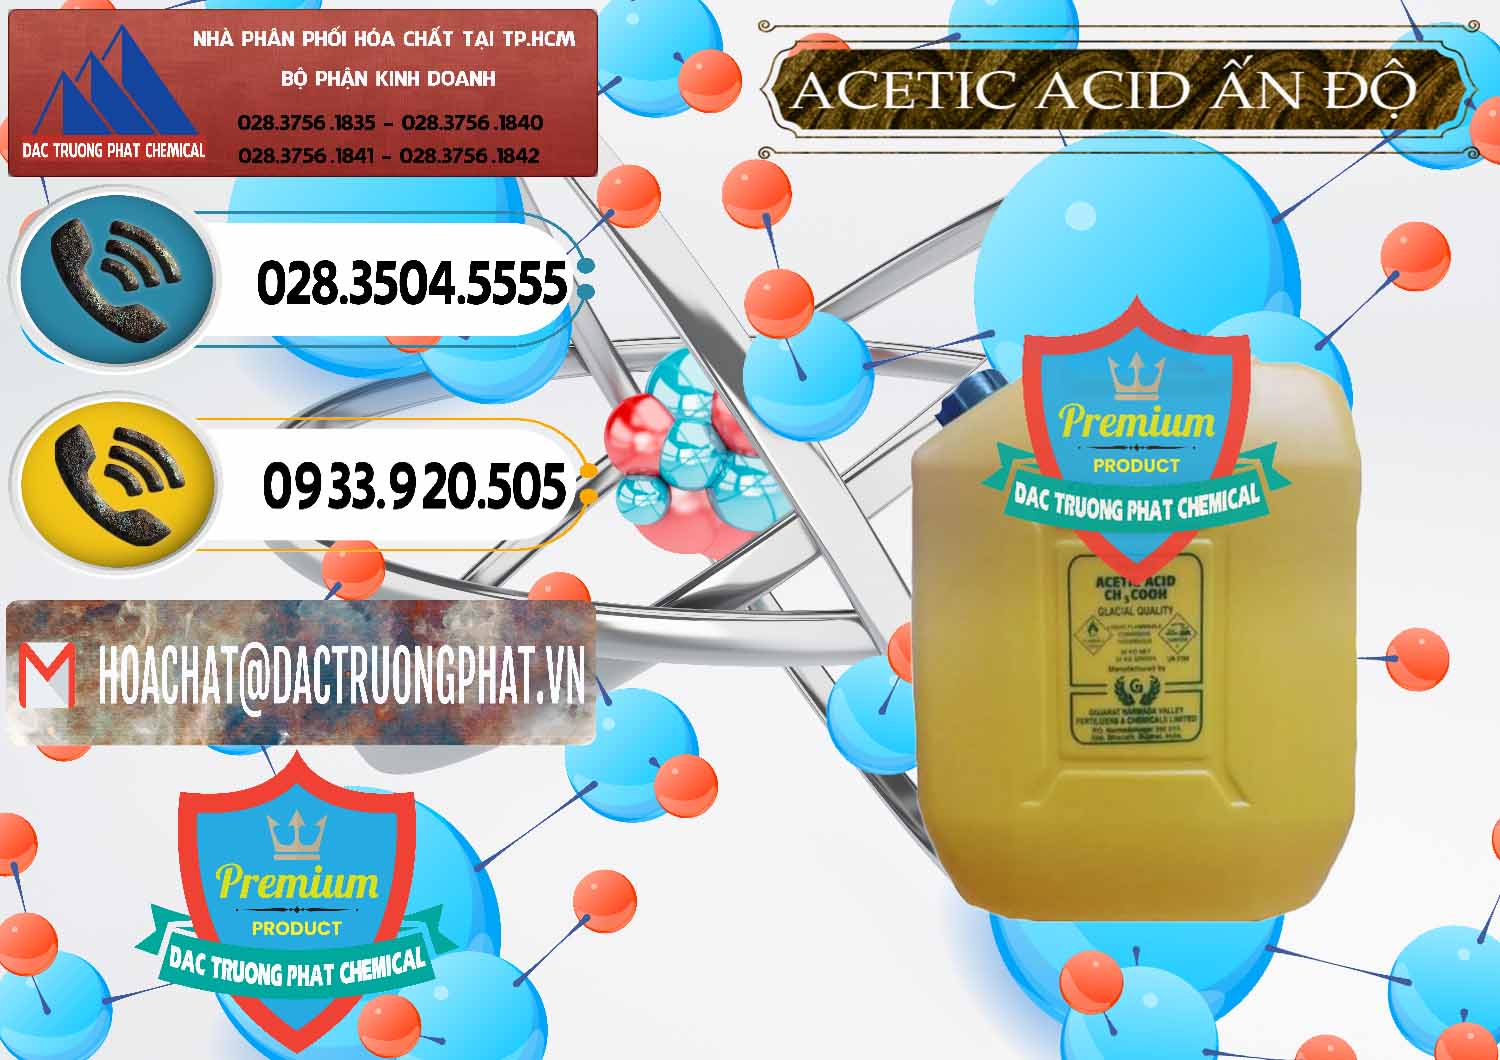 Cty bán và cung ứng Acetic Acid – Axit Acetic Ấn Độ India - 0359 - Đơn vị cung cấp _ bán hóa chất tại TP.HCM - hoachatdetnhuom.vn